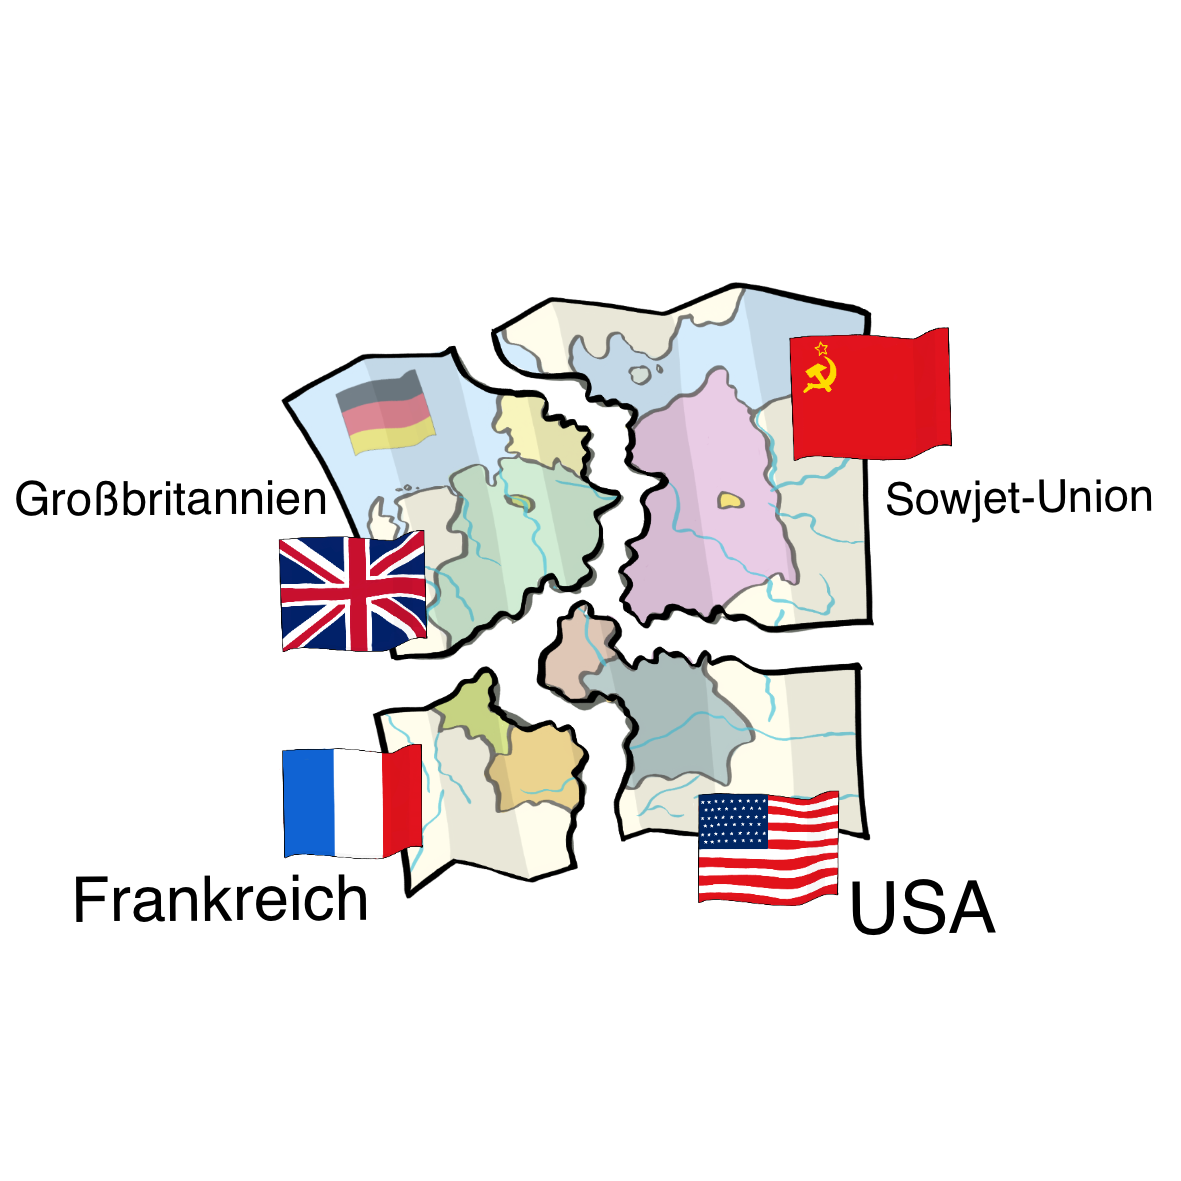 Eine Deutschlandkarte. Die Karte ist vier Teile zerrissen. An den Teilen sind jeweils die Flaggen von Großbritannien, Frankreich, Sowjetunion oder USA. Neben den Flaggen stehen die Ländernamen.